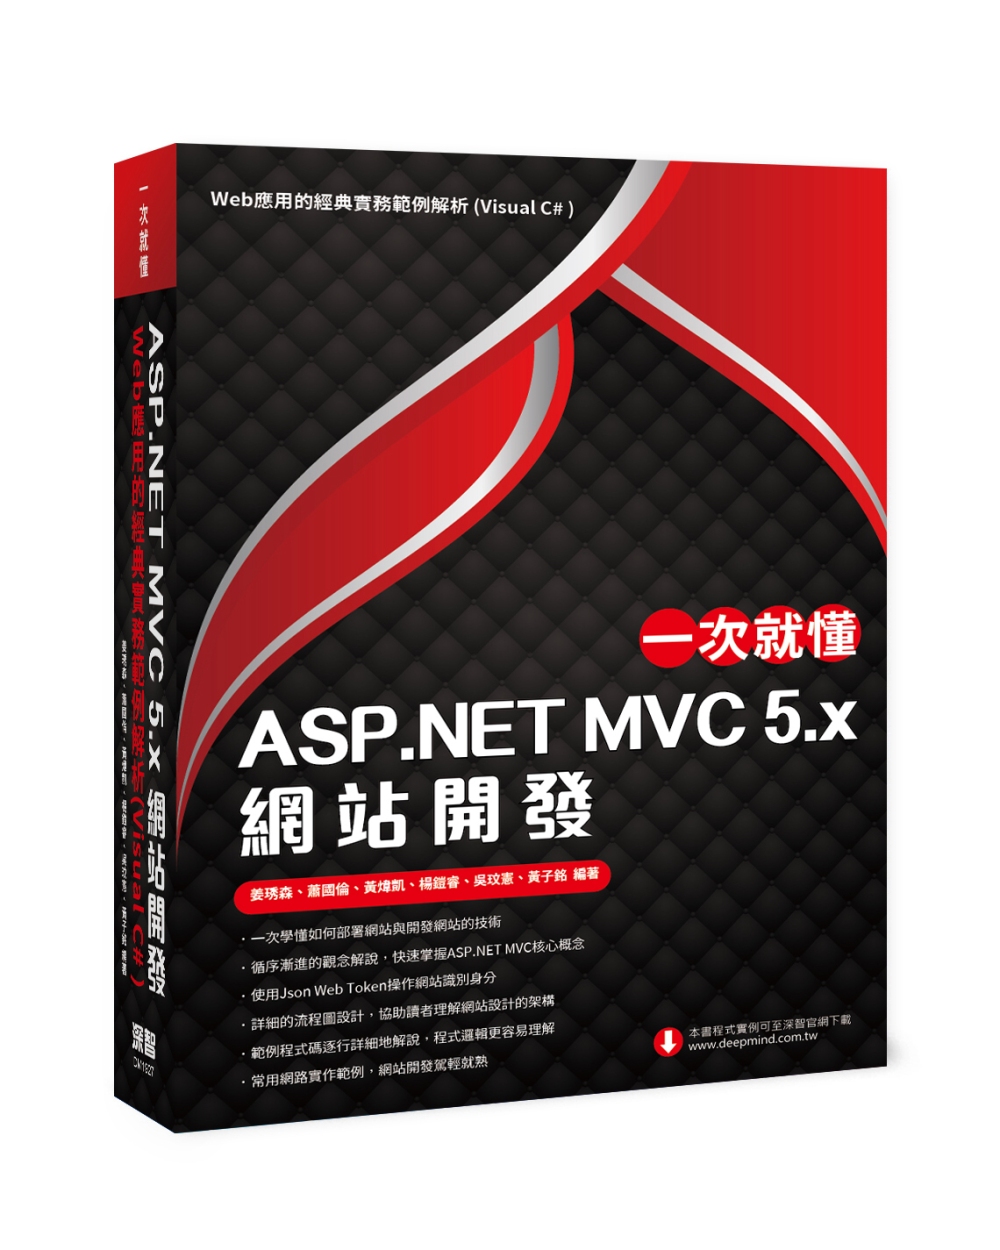 一次就懂 ASP.NET MVC 5.x 網站開發：Web應用的經典實務範例解析(Visual C# )